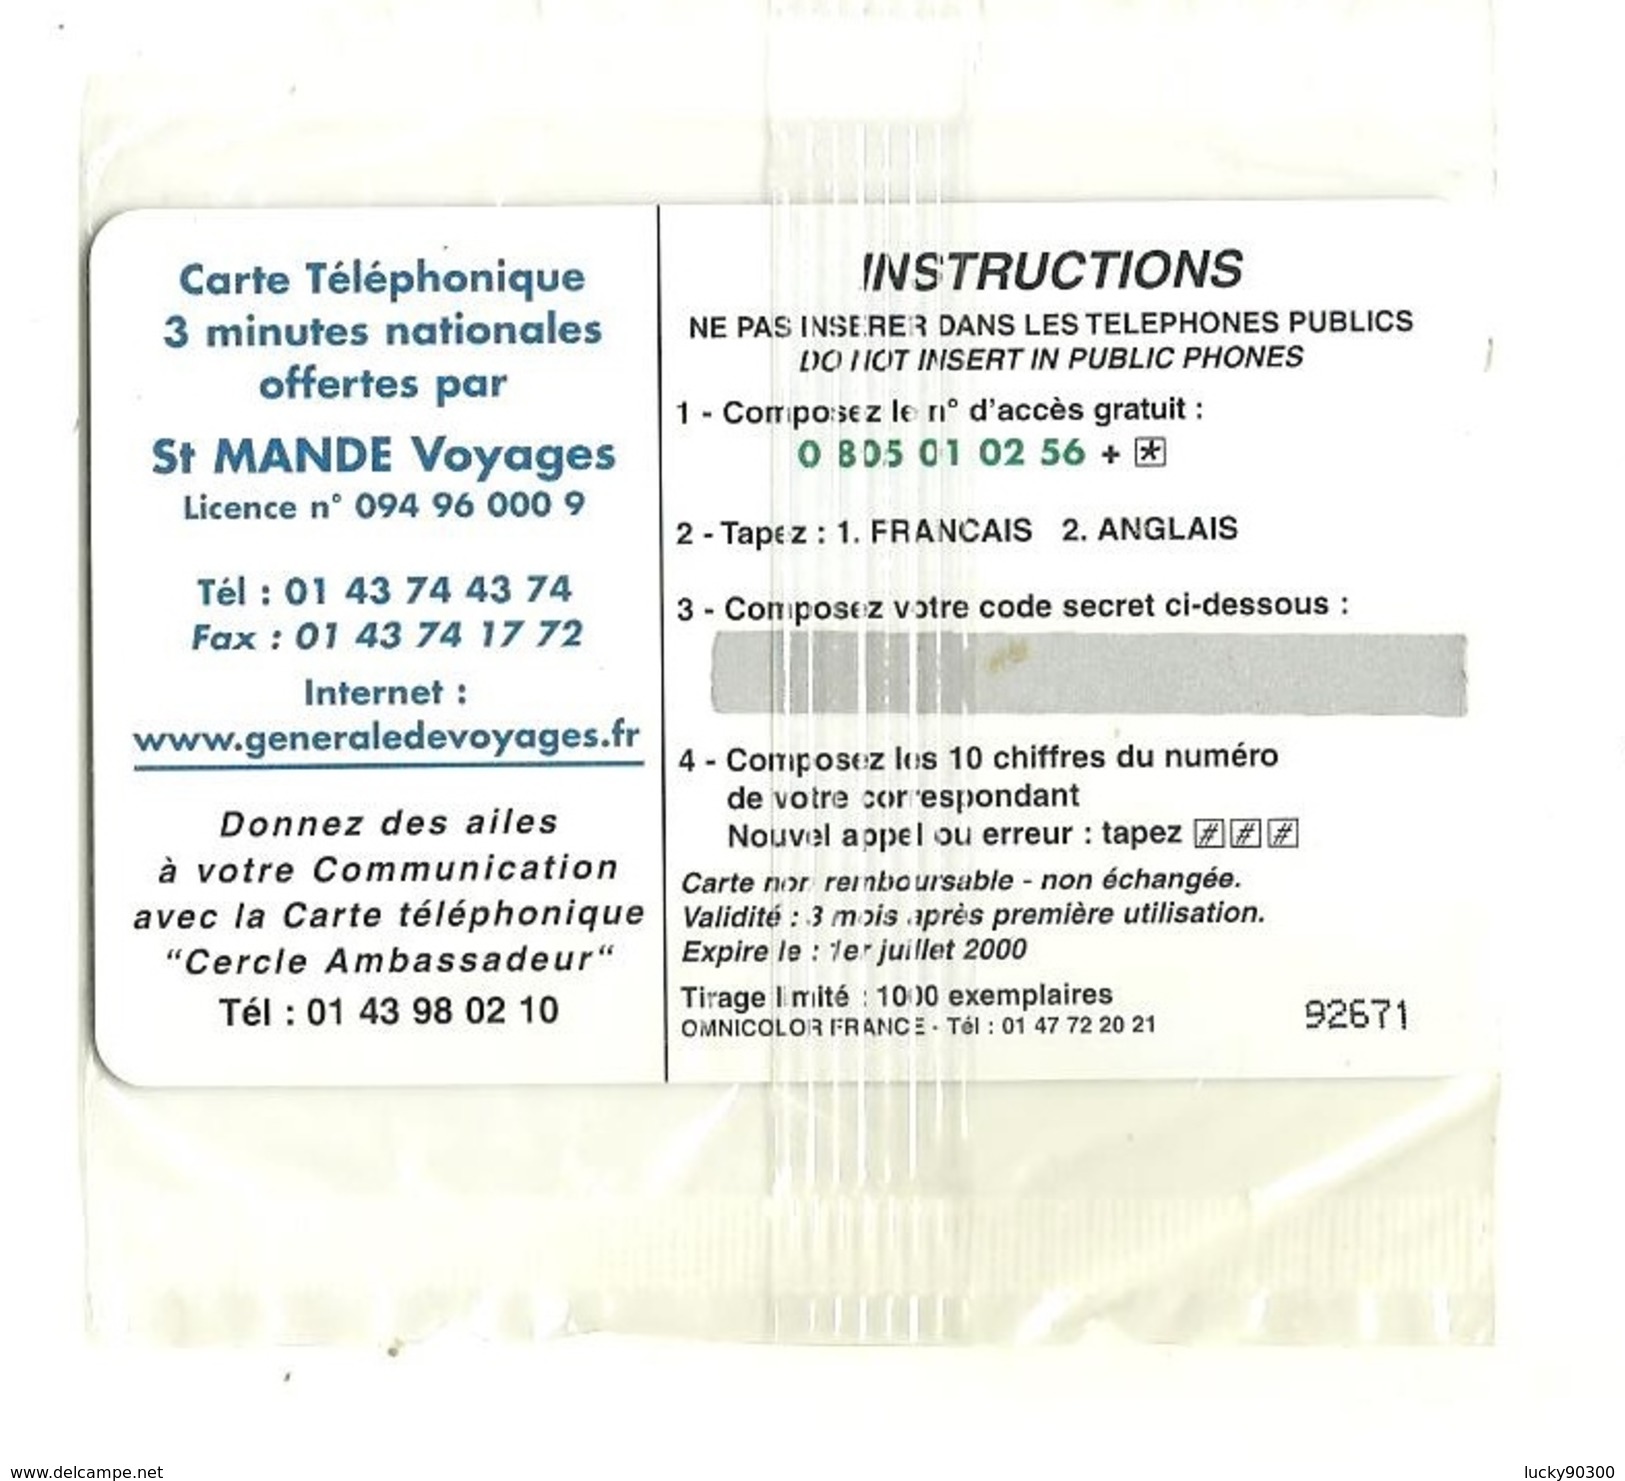 RARE CARTE TÉLÉPHONIQUE - TÉLÉCARTE - NEUVE SOUS BLISTER - 3 MINUTES - 1 000 EXEMPLAIRES - ST MANDE VOYAGES - Phonecards: Private Use